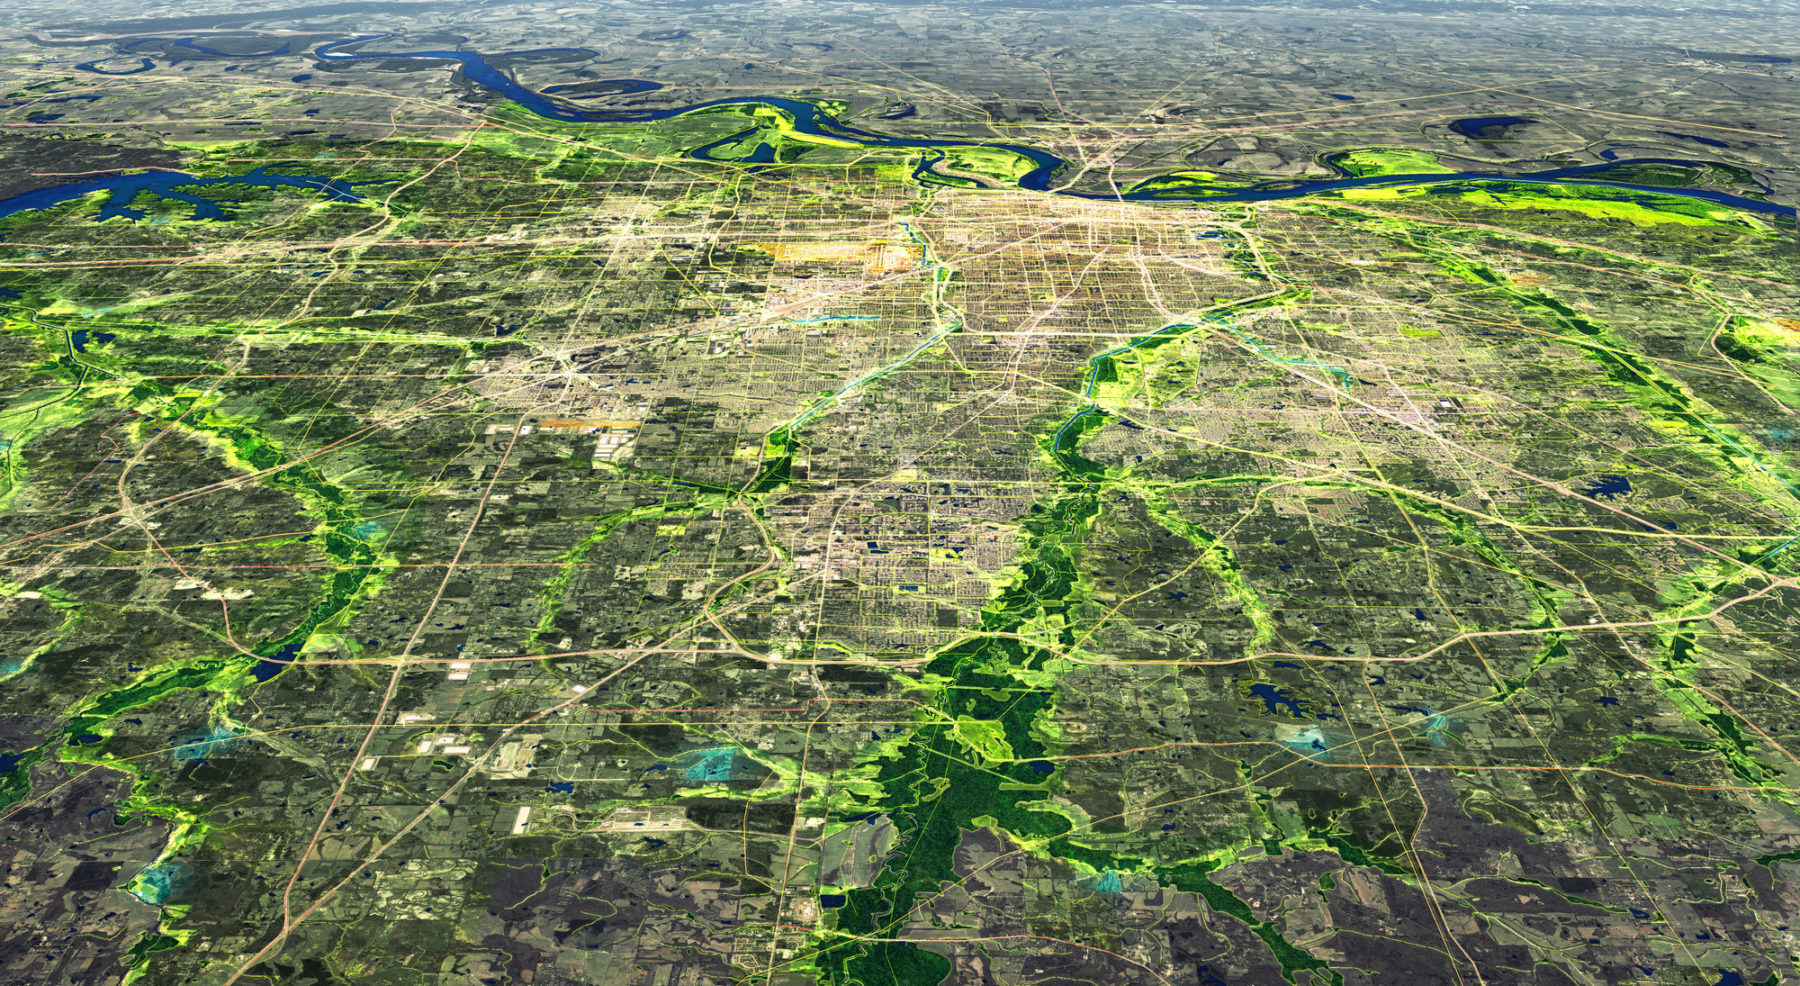 aerial perspective drawing of region highlighting waterways